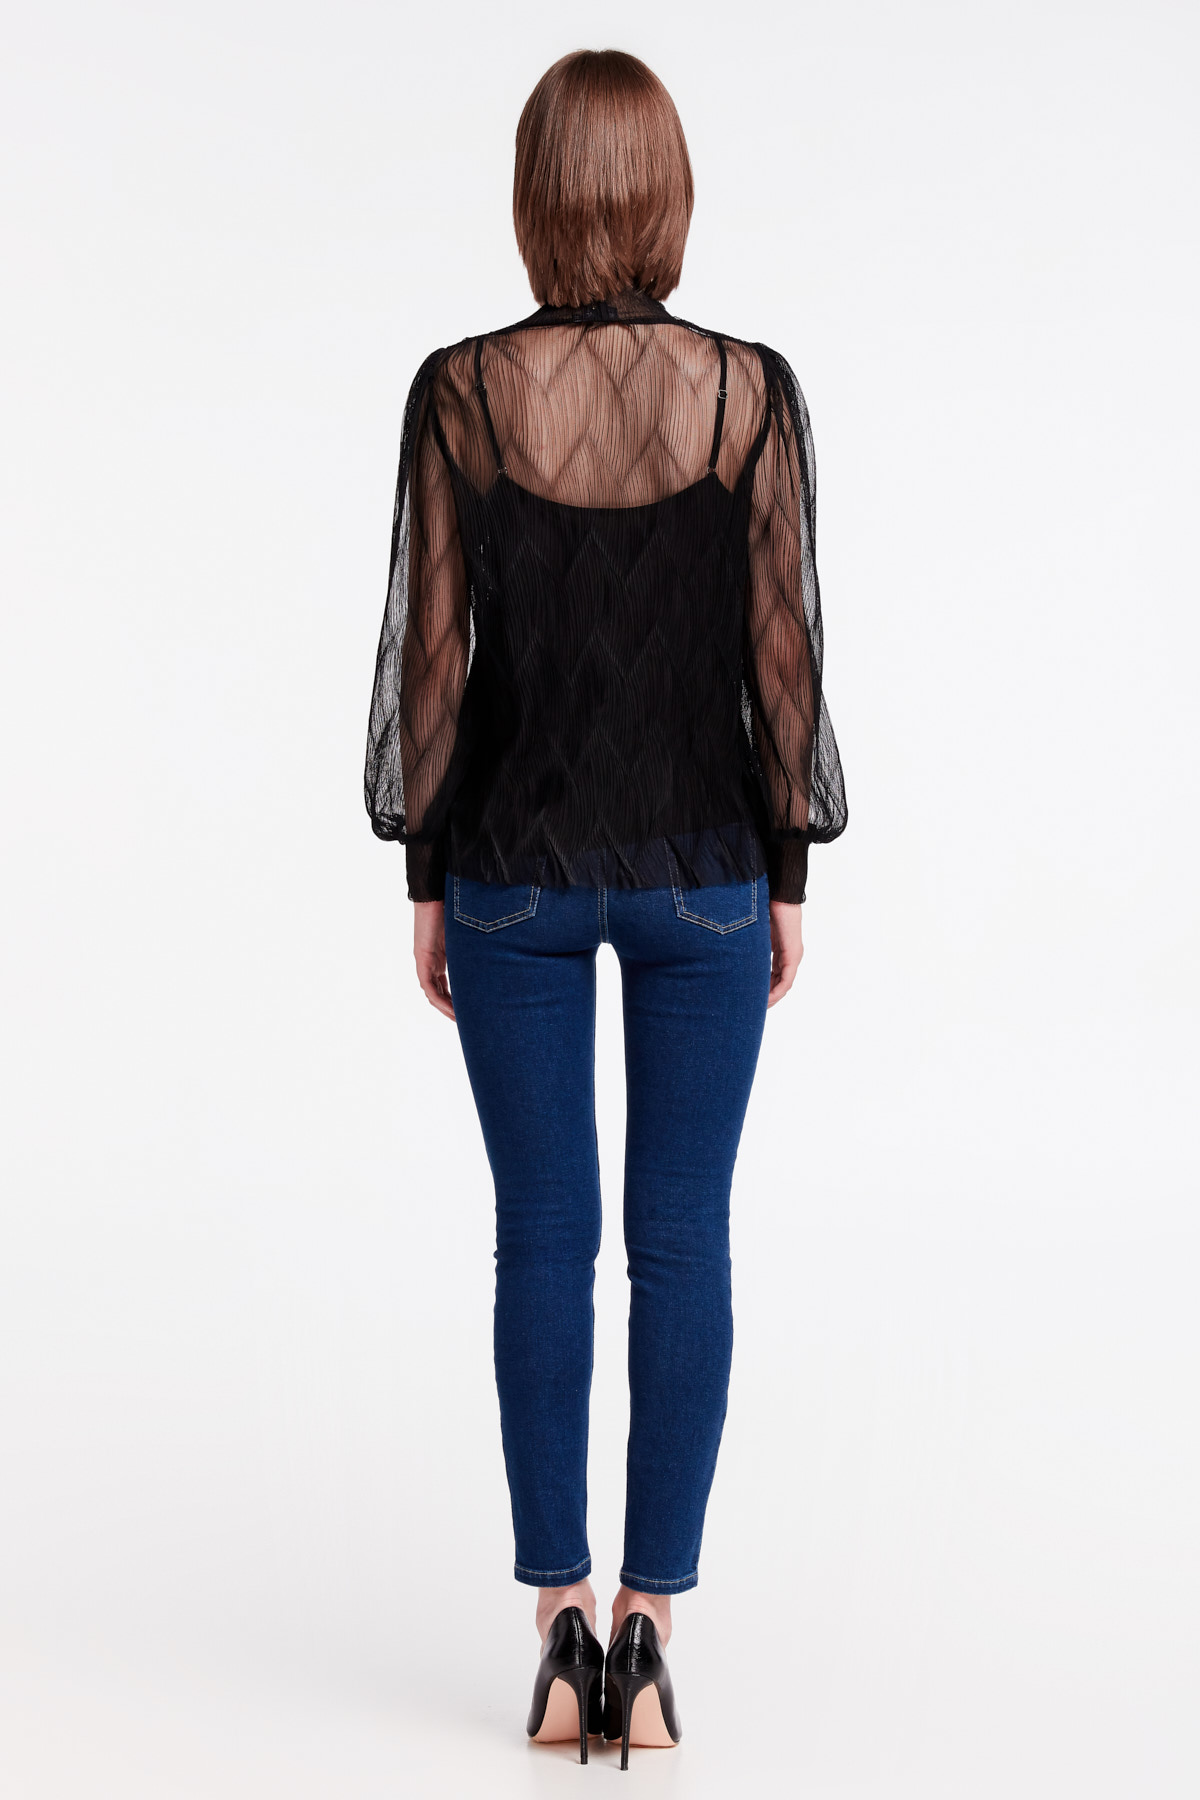 Black lace blouse, photo 6